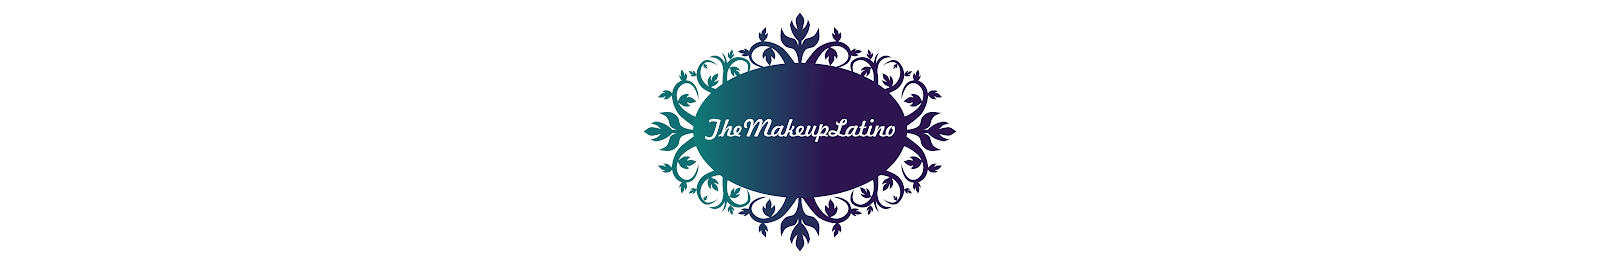 The Makeup Latino